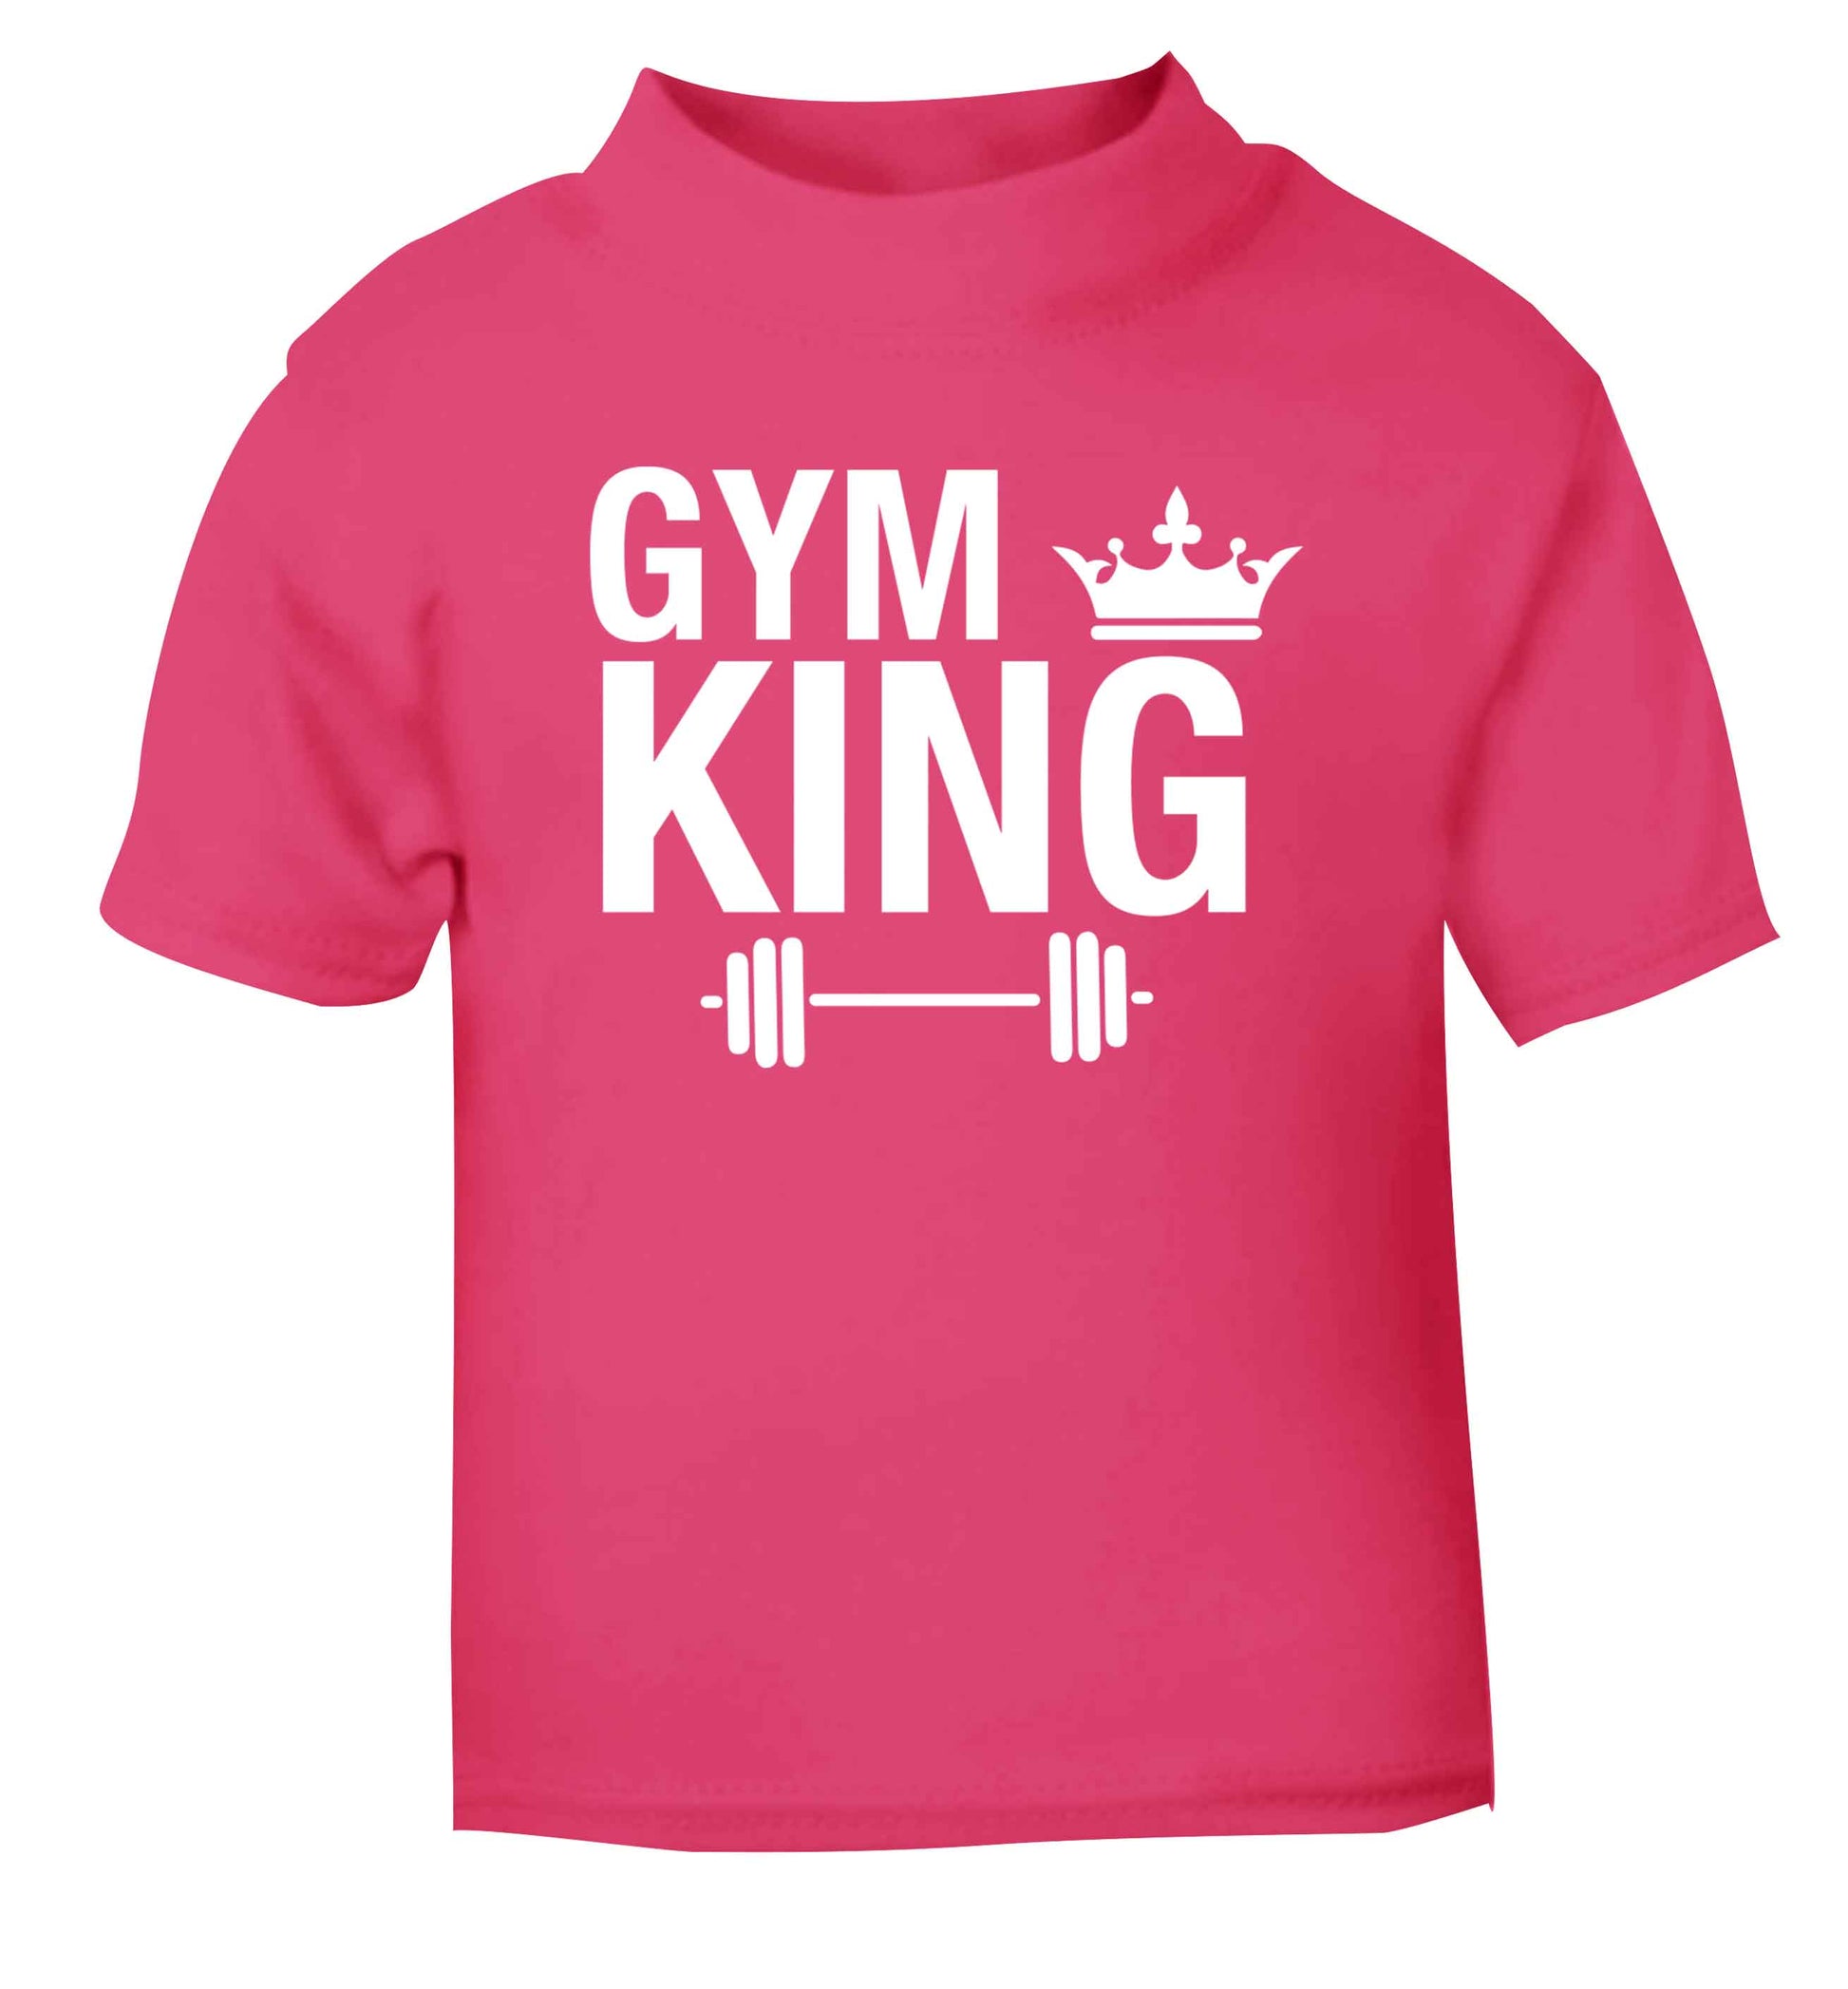 Gym king pink Baby Toddler Tshirt 2 Years